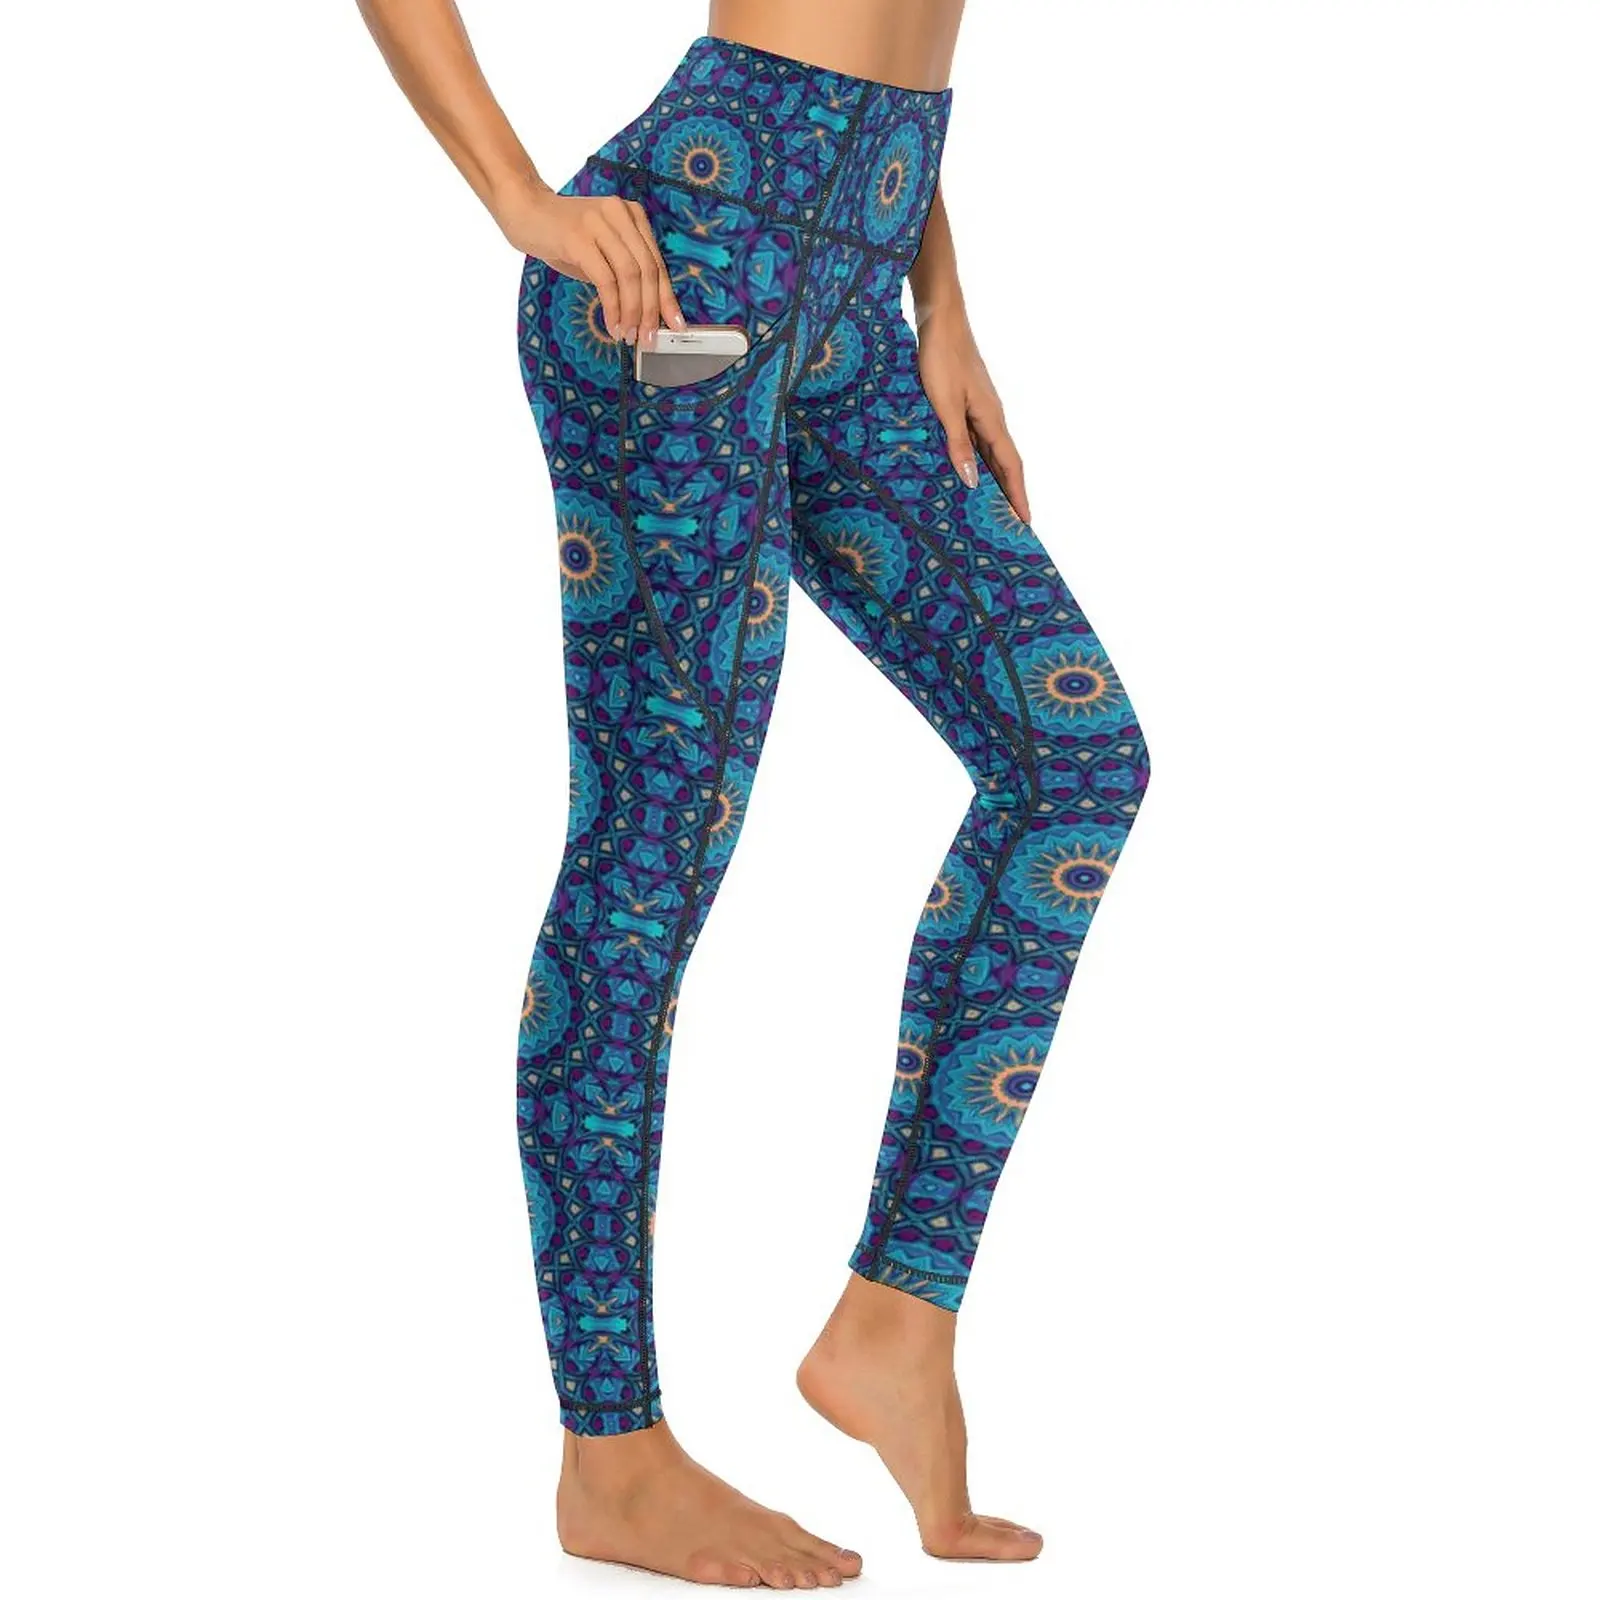 

Леггинсы Peace Mandala, винтажные штаны для фитнеса и йоги с цветочным принтом, спортивные эластичные леггинсы с высокой талией, повседневные леггинсы с графическим принтом и карманами